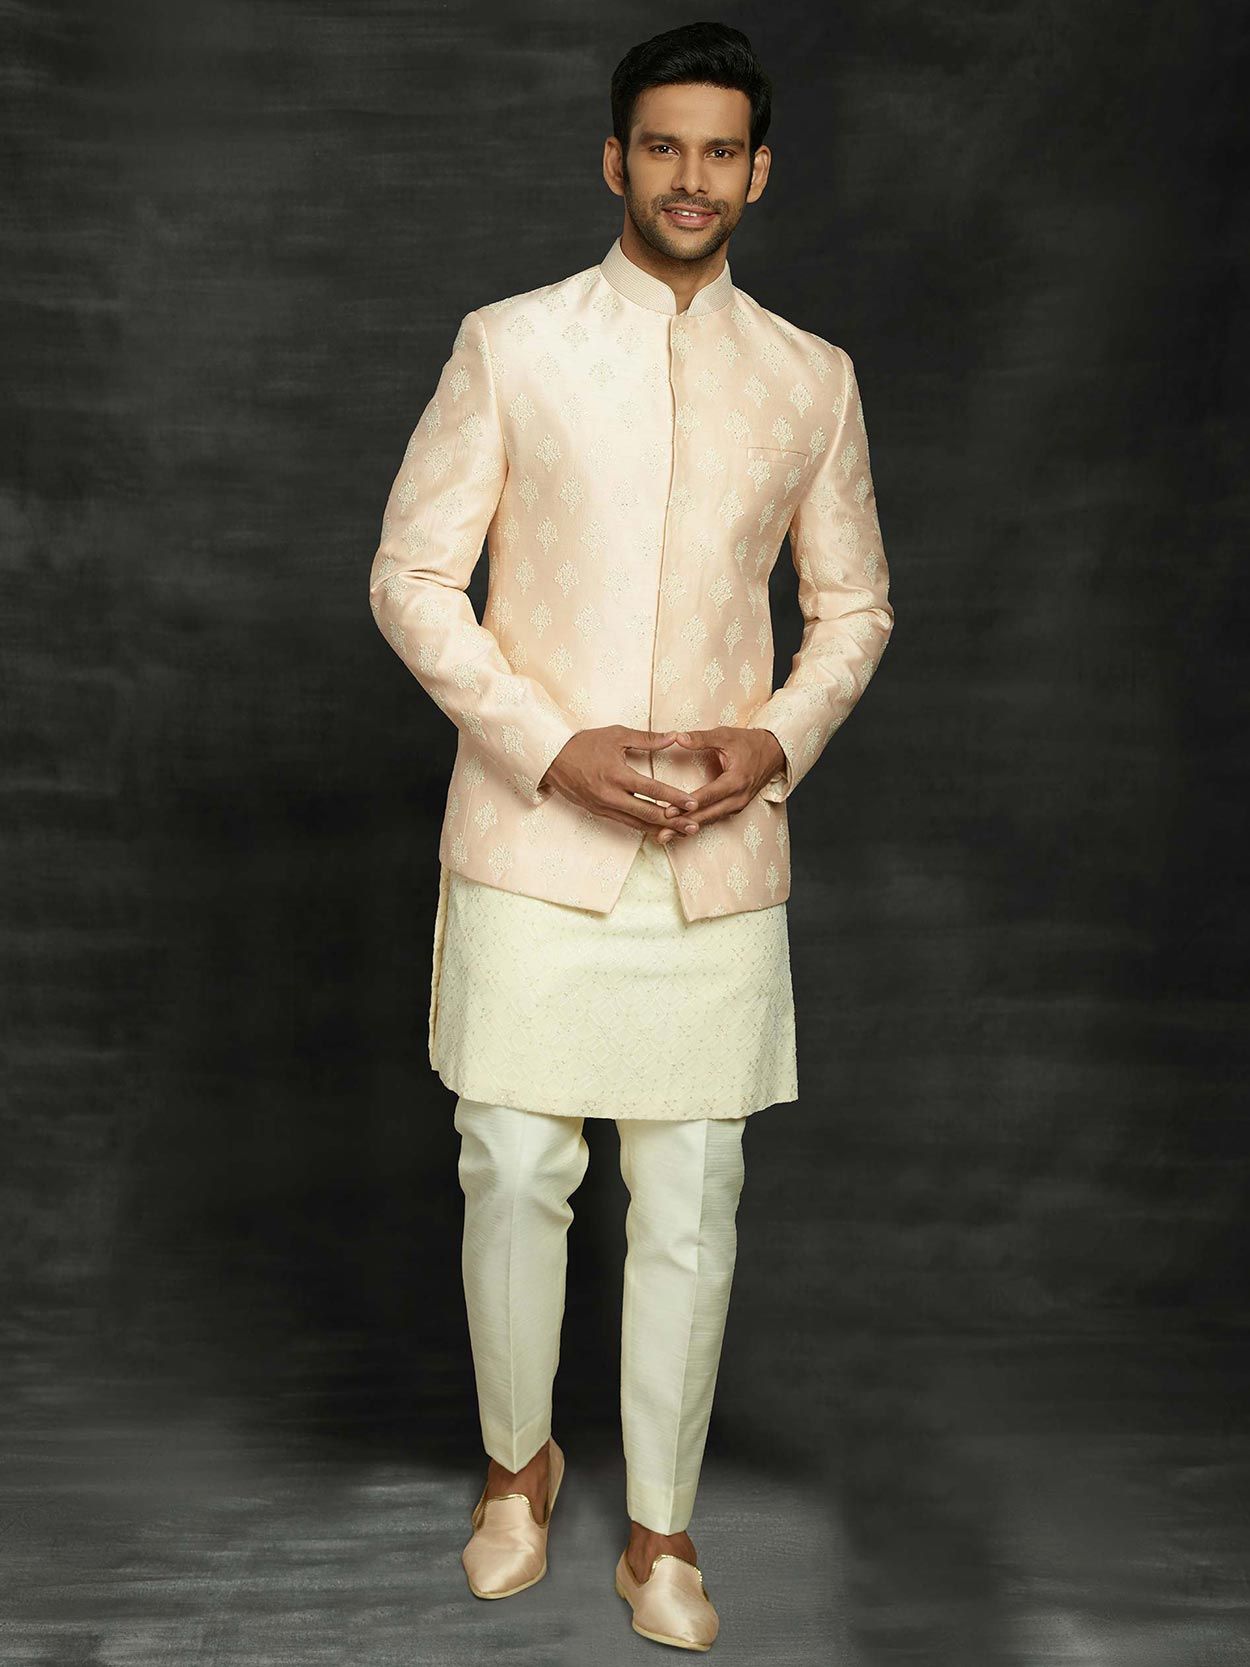 Men's White Woven Bandhgala Jodhpuri Suit 897MW13